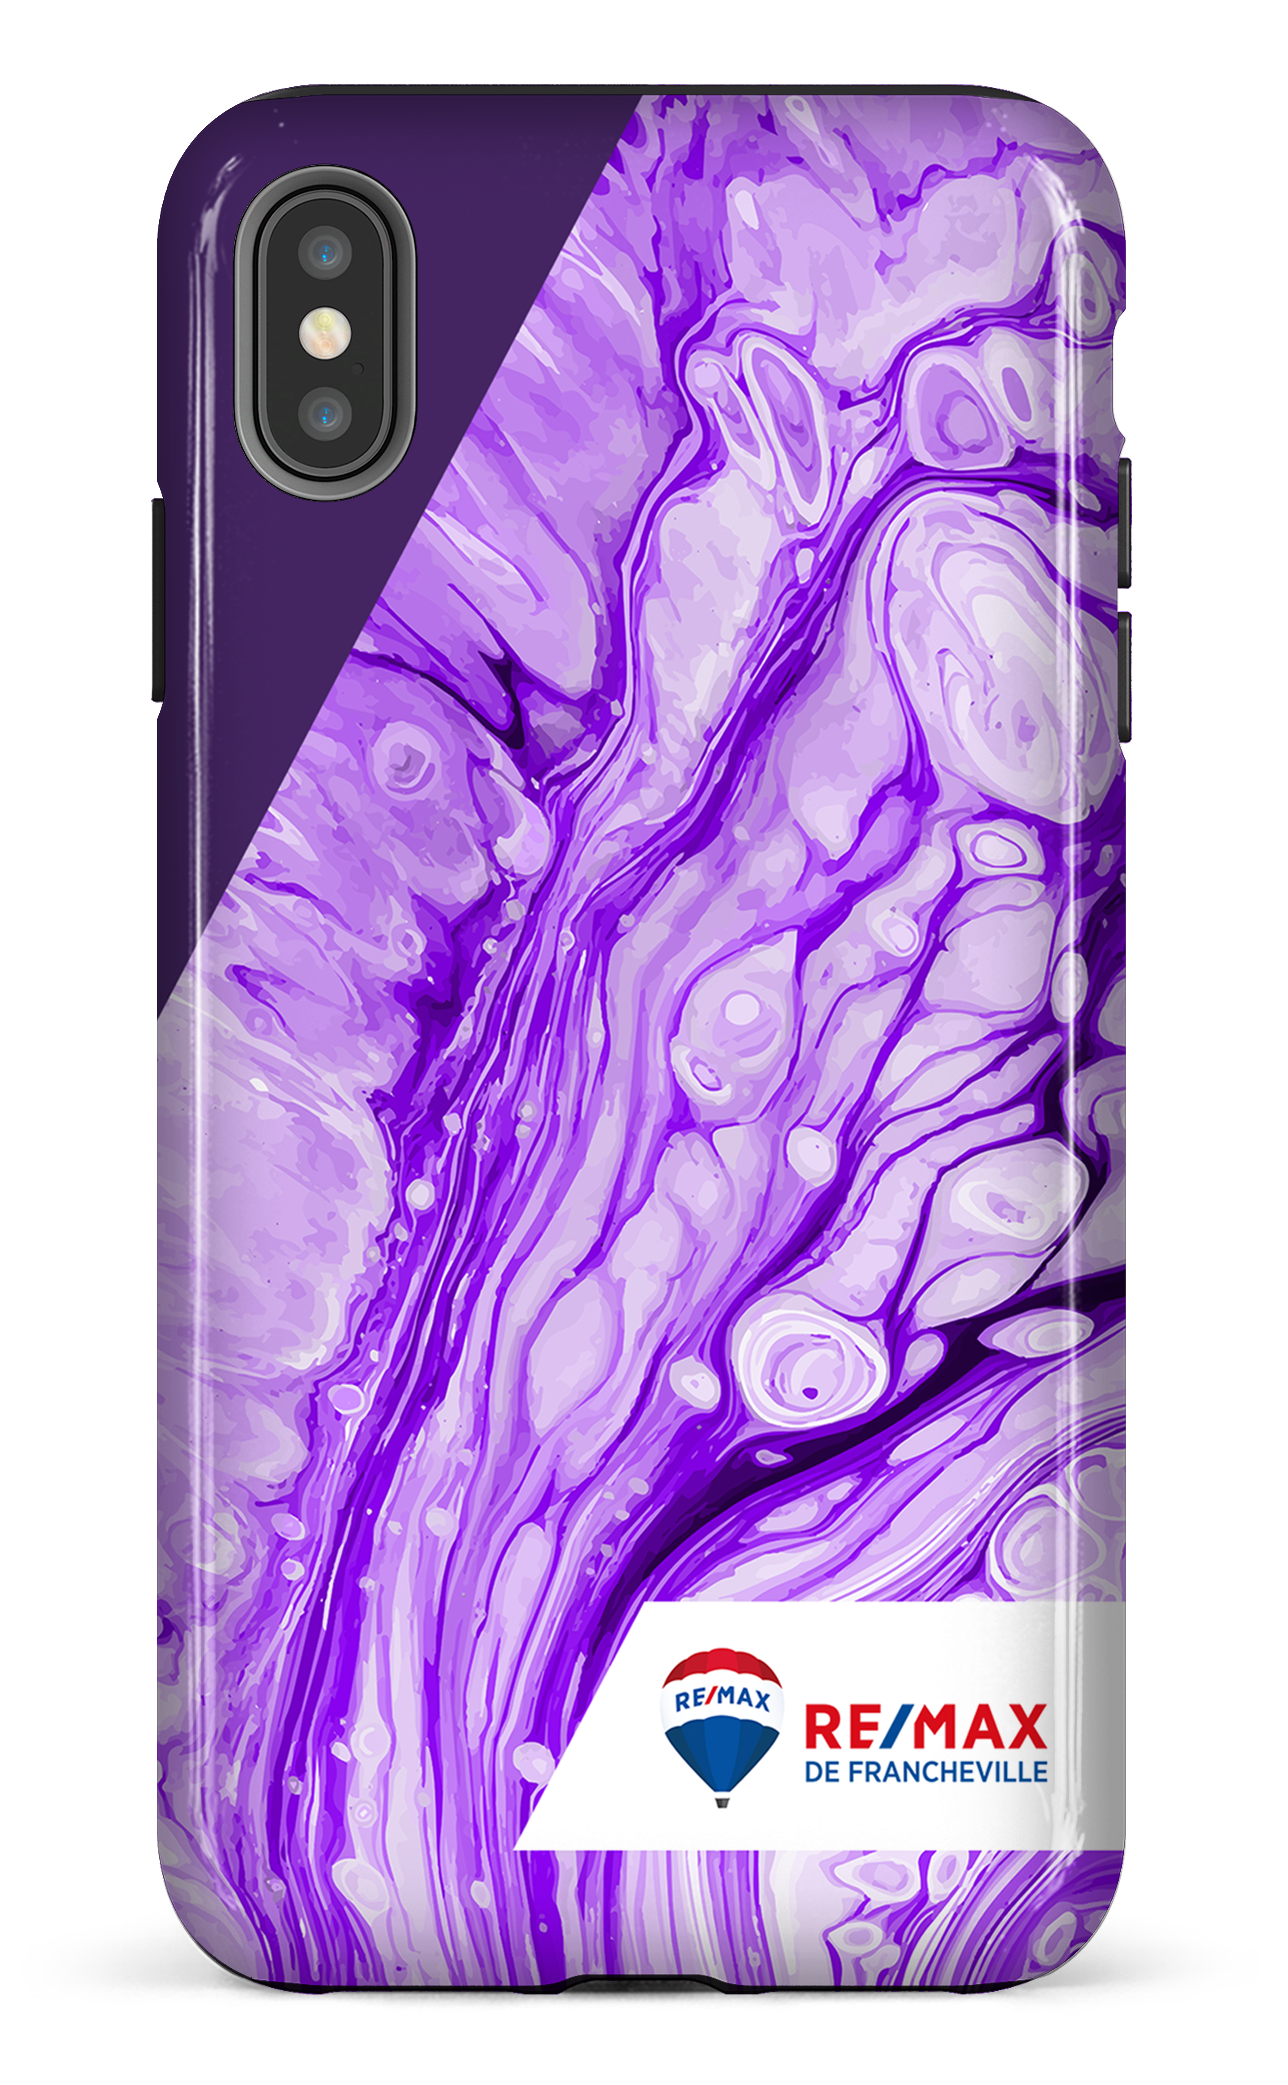 Peinture marbrée claire violette de Francheville - iPhone XS Max